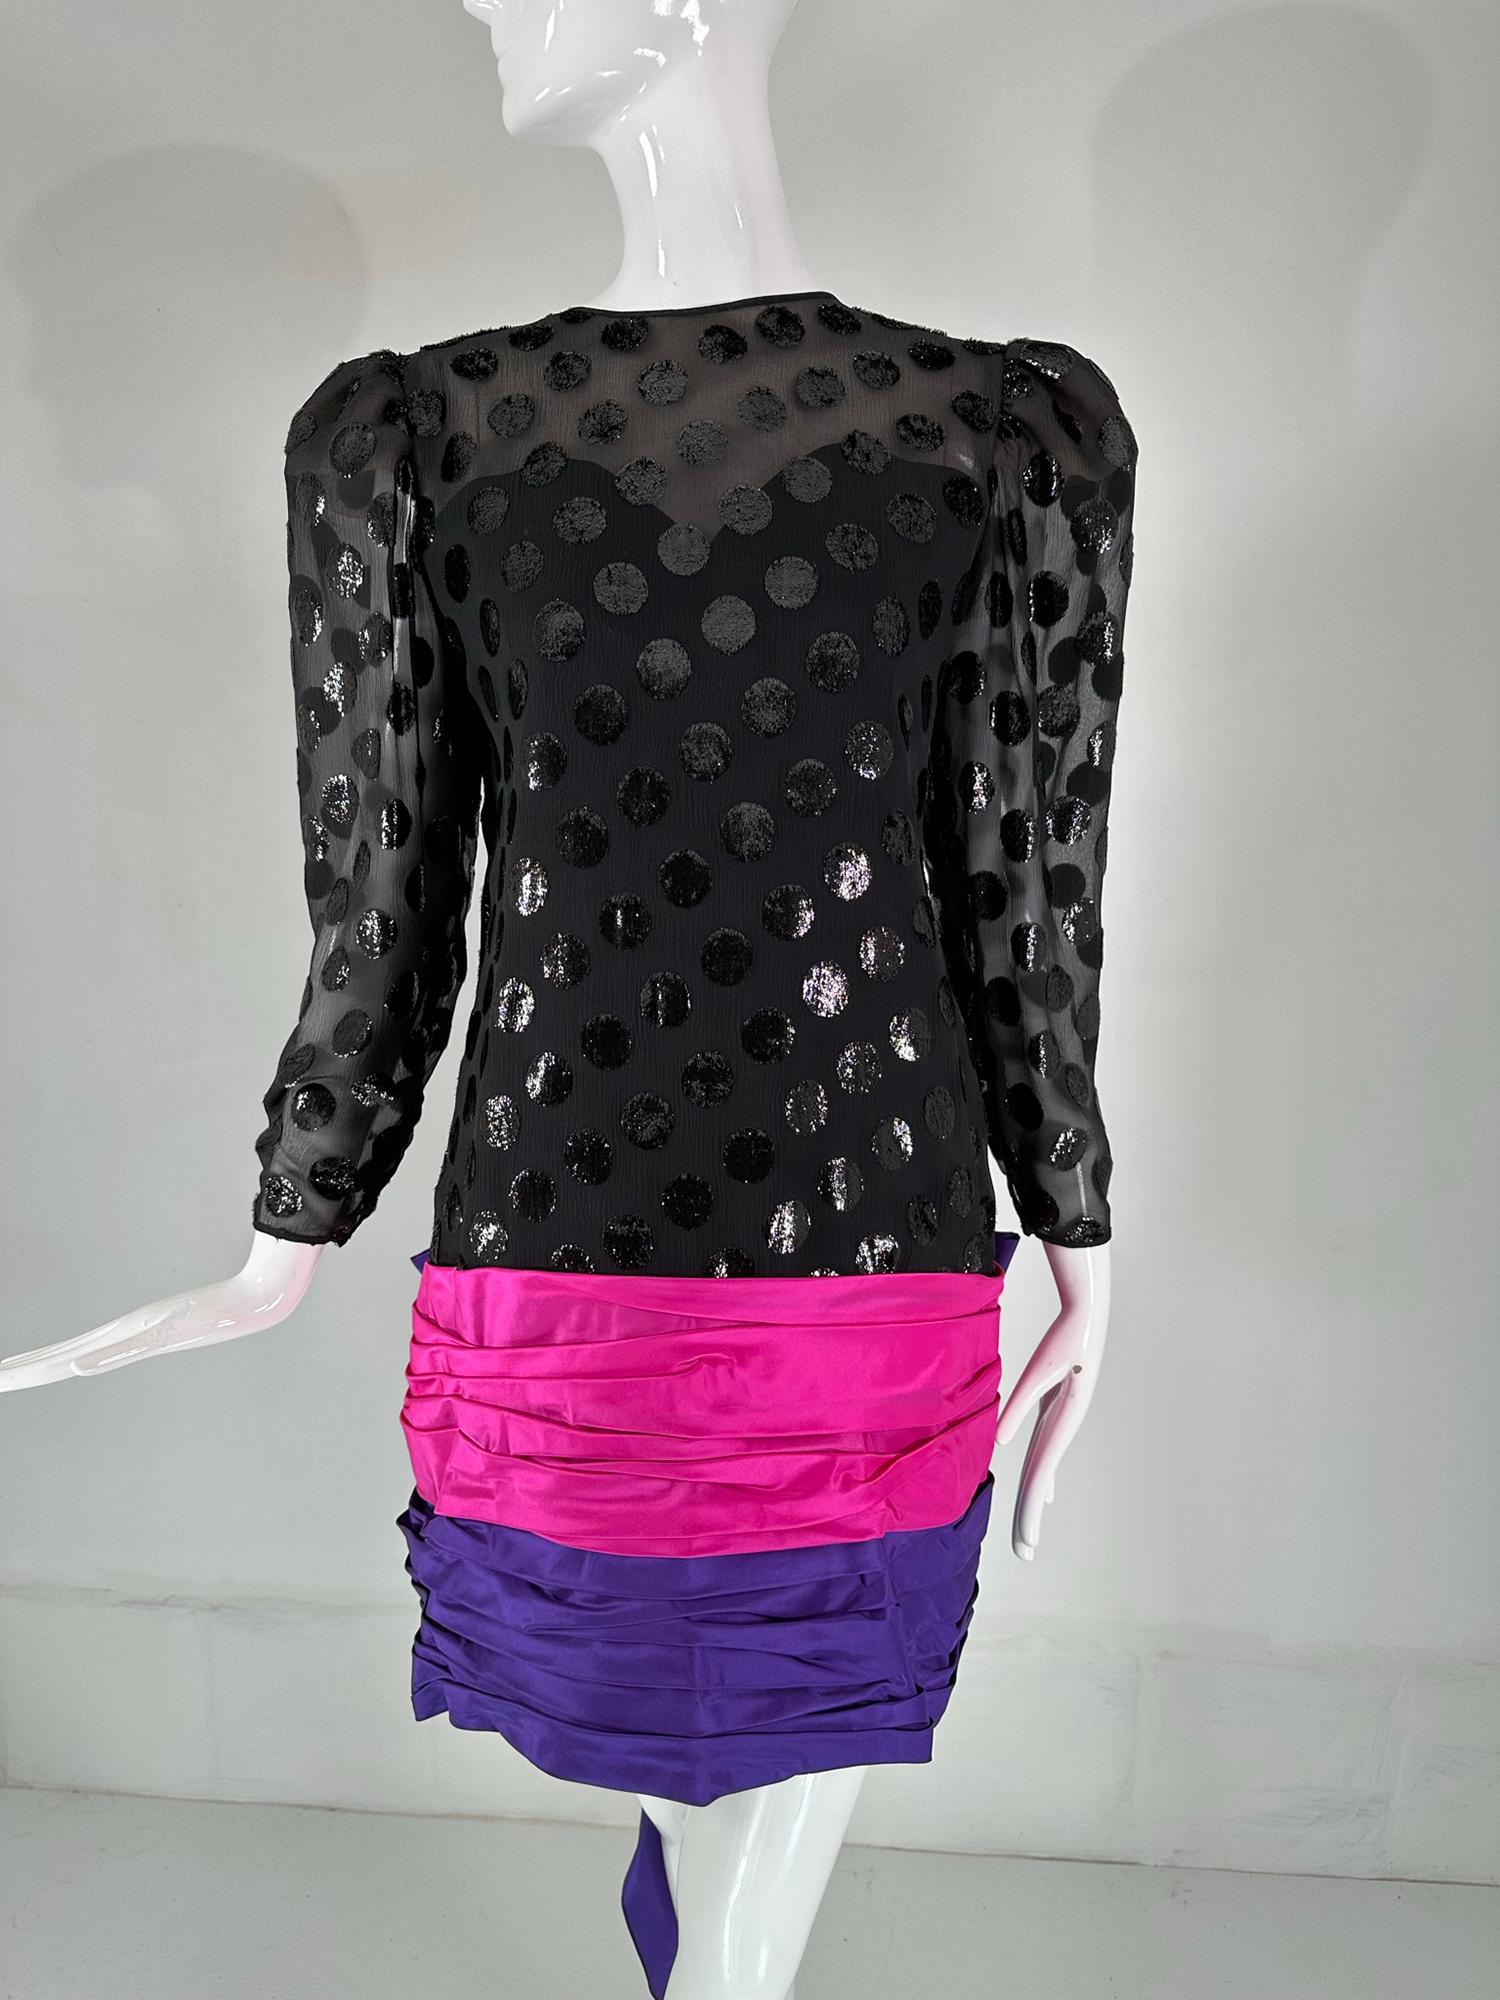 1980 Velours noir coupé avec de gros points de velours étincelants. Encolure en V dans le dos avec jupe en taffetas rose et violet drapée horizontalement et un énorme nœud au niveau des hanches dans le dos. LA fabuleuse robe de soirée des années